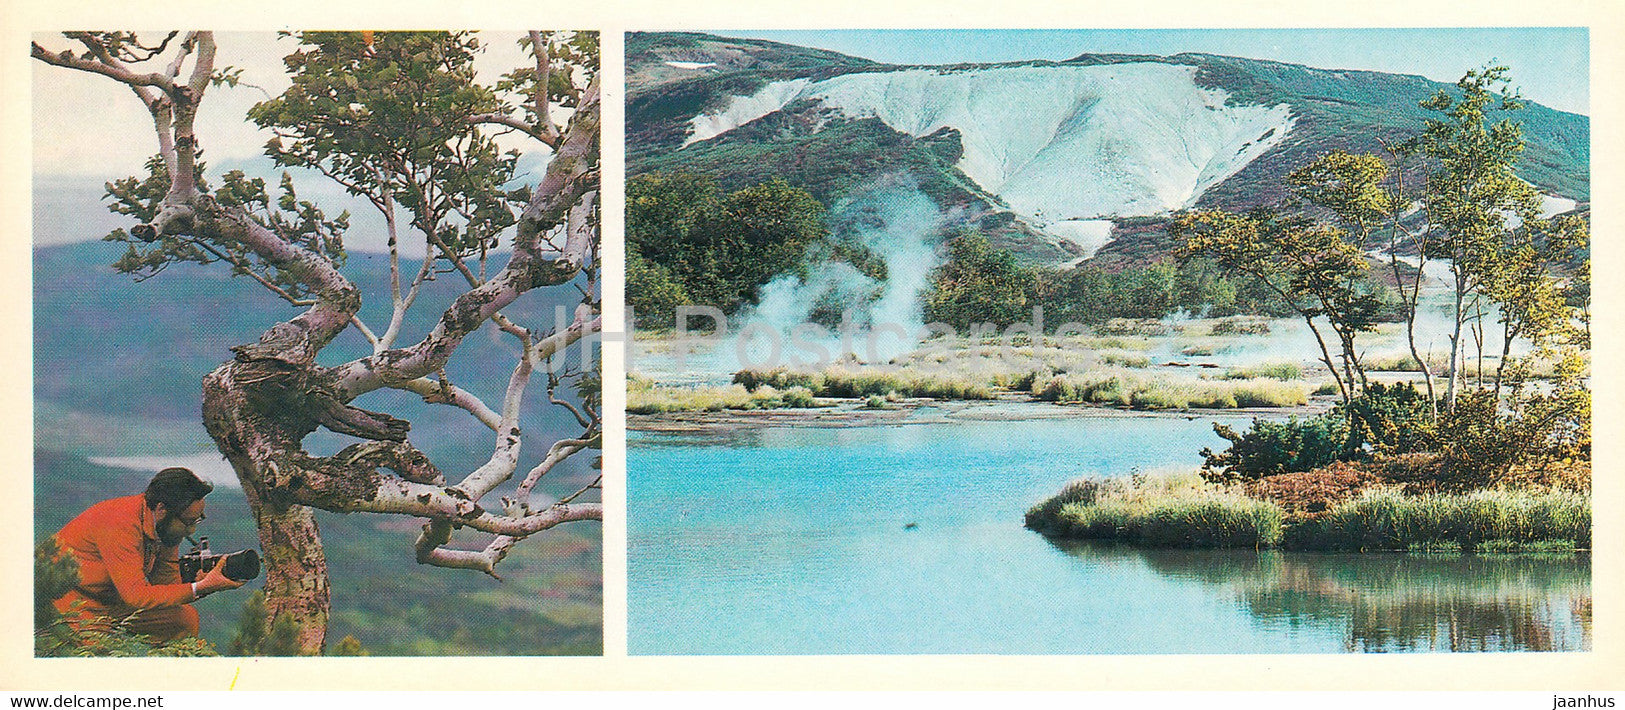 Kamchatka - Erman's birch - Betula ermanii - lake Utinoye - volcano Uzon - 1981 - Russia USSR - unused - JH Postcards